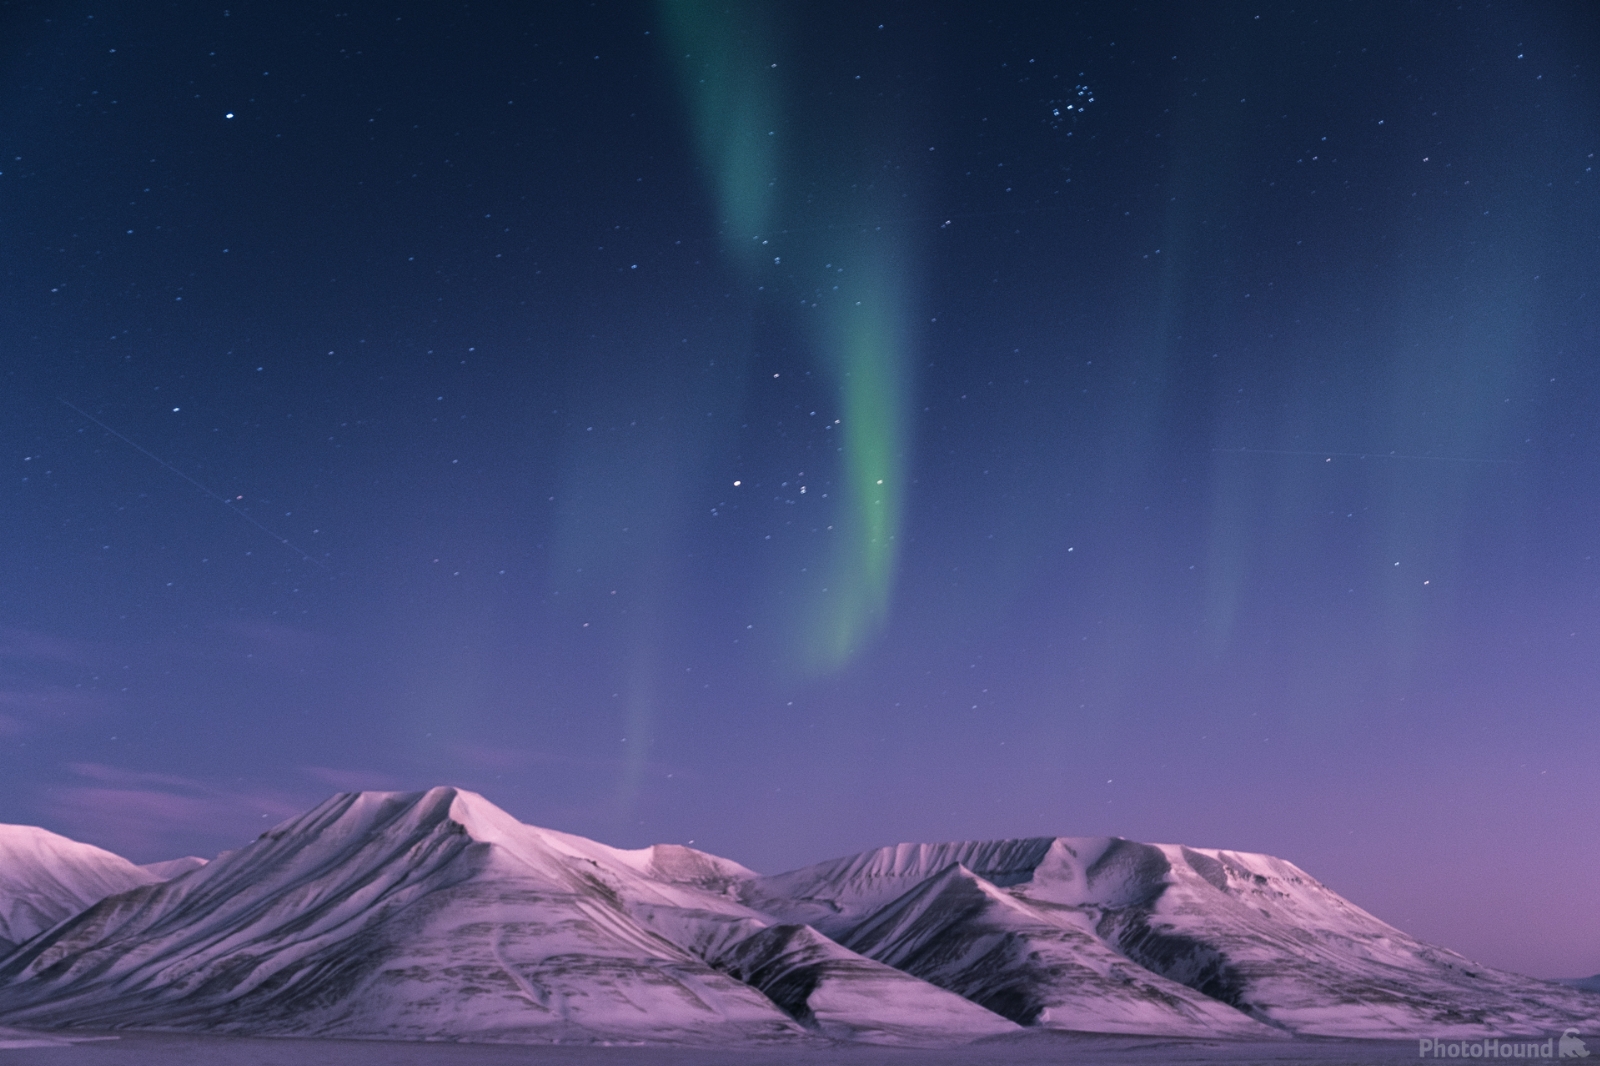 Image of Mt Operafjellet from Longyearbyen by Cezary K. Morga